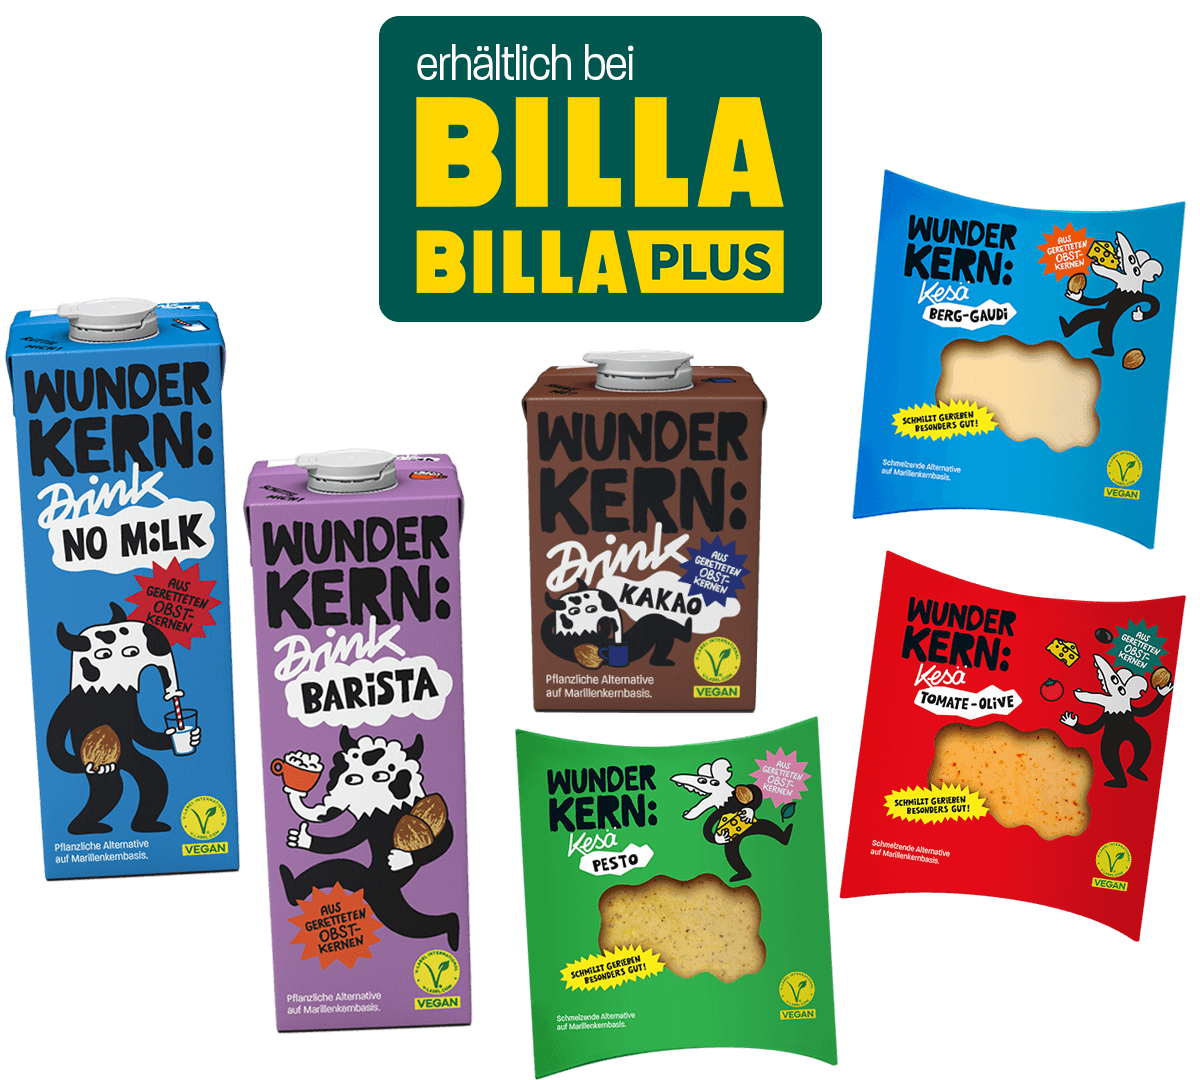 Wunderkern Produkte kaufen bei Billa und Billa Plus